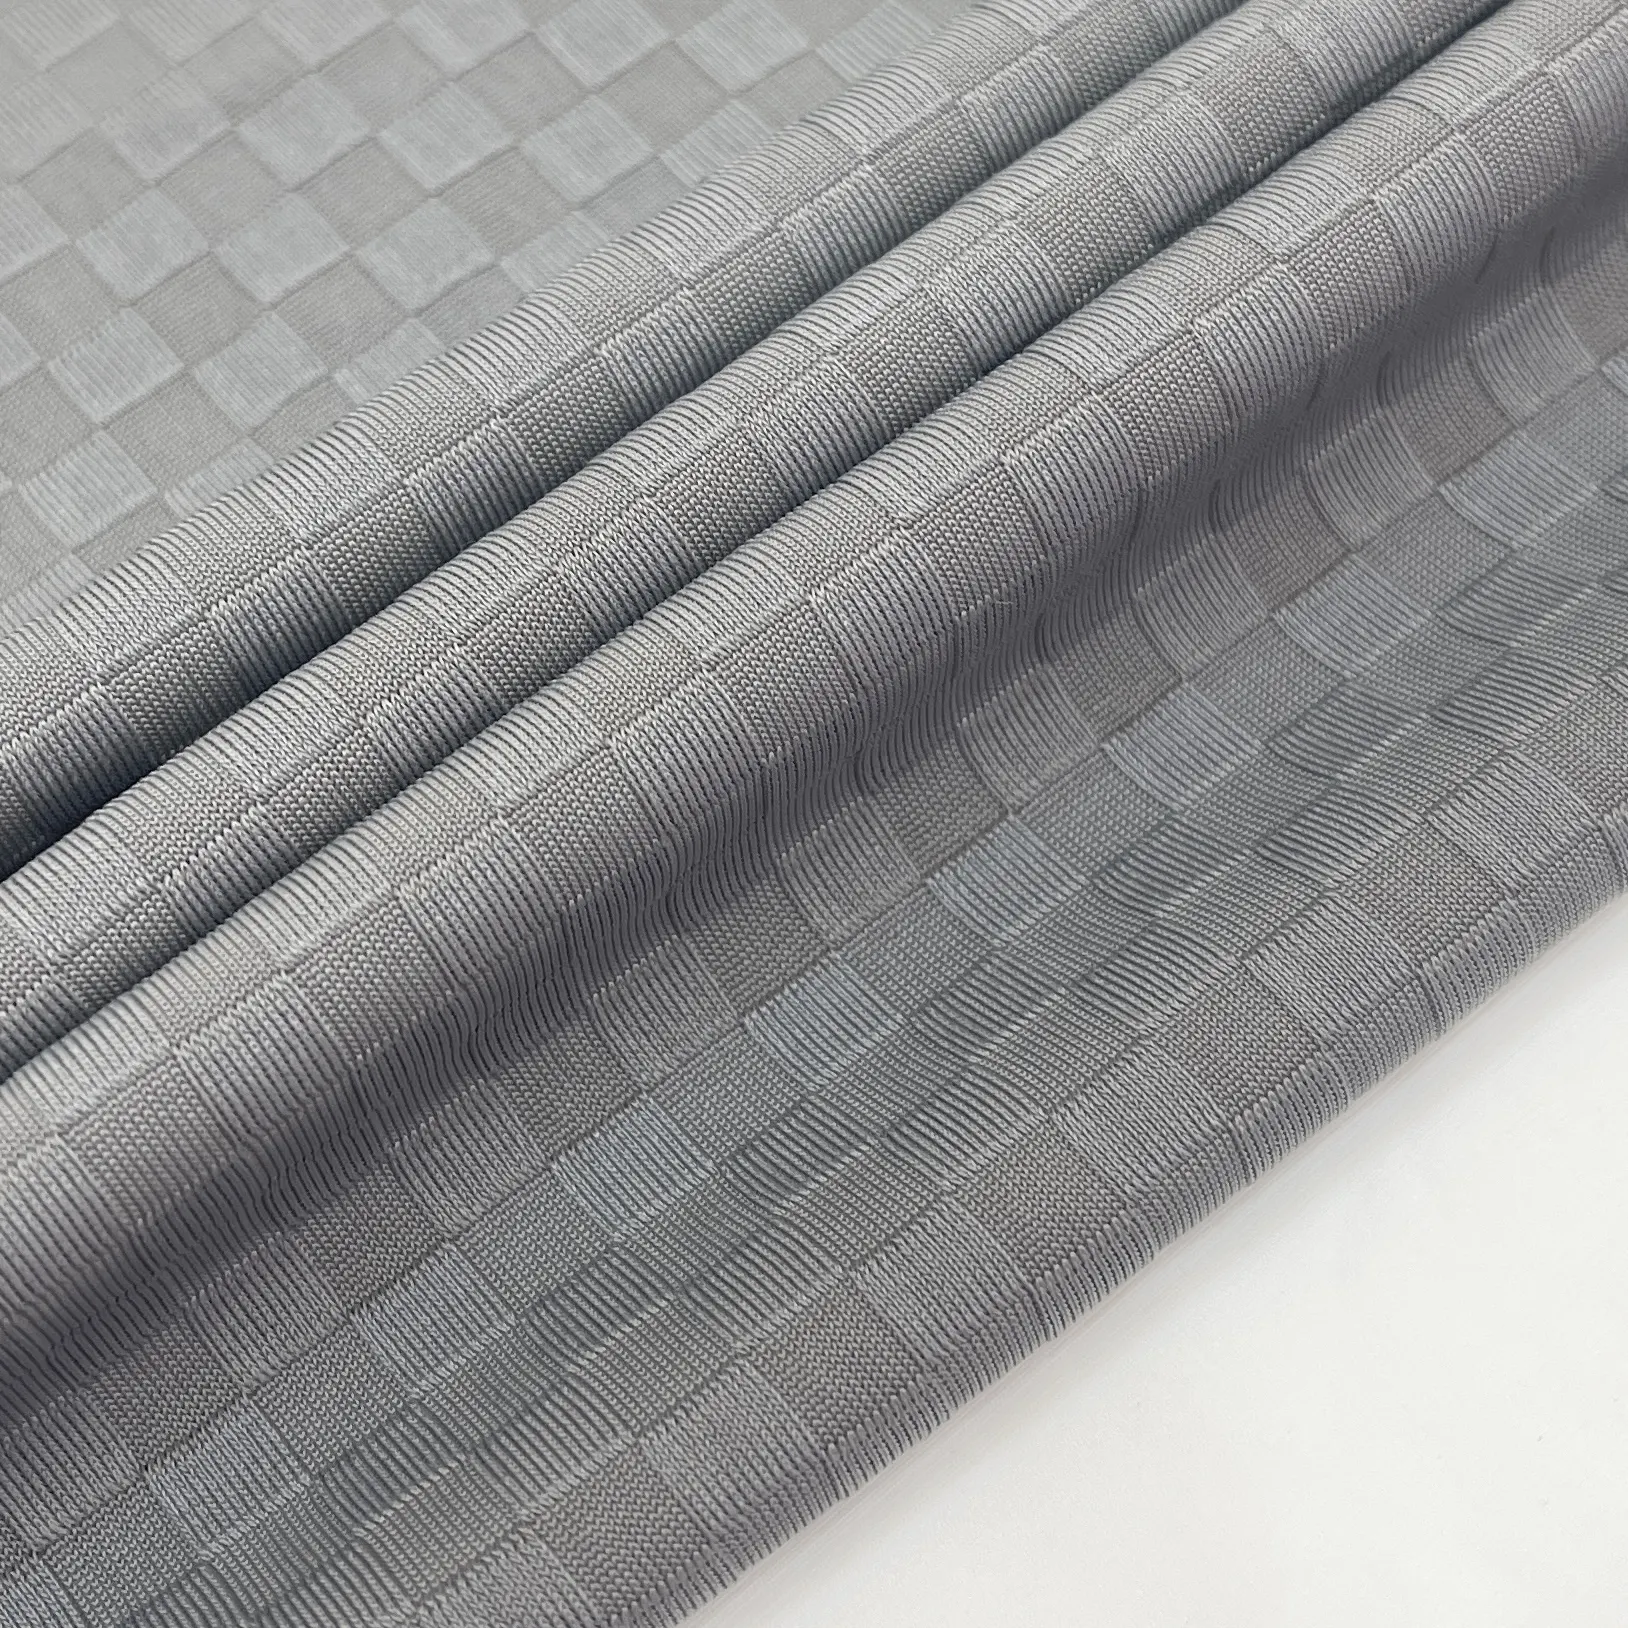 Tissu spandex en polyester respirant élastique extensible dans les 4 sens personnalisé en usine pour sous-vêtements de sport